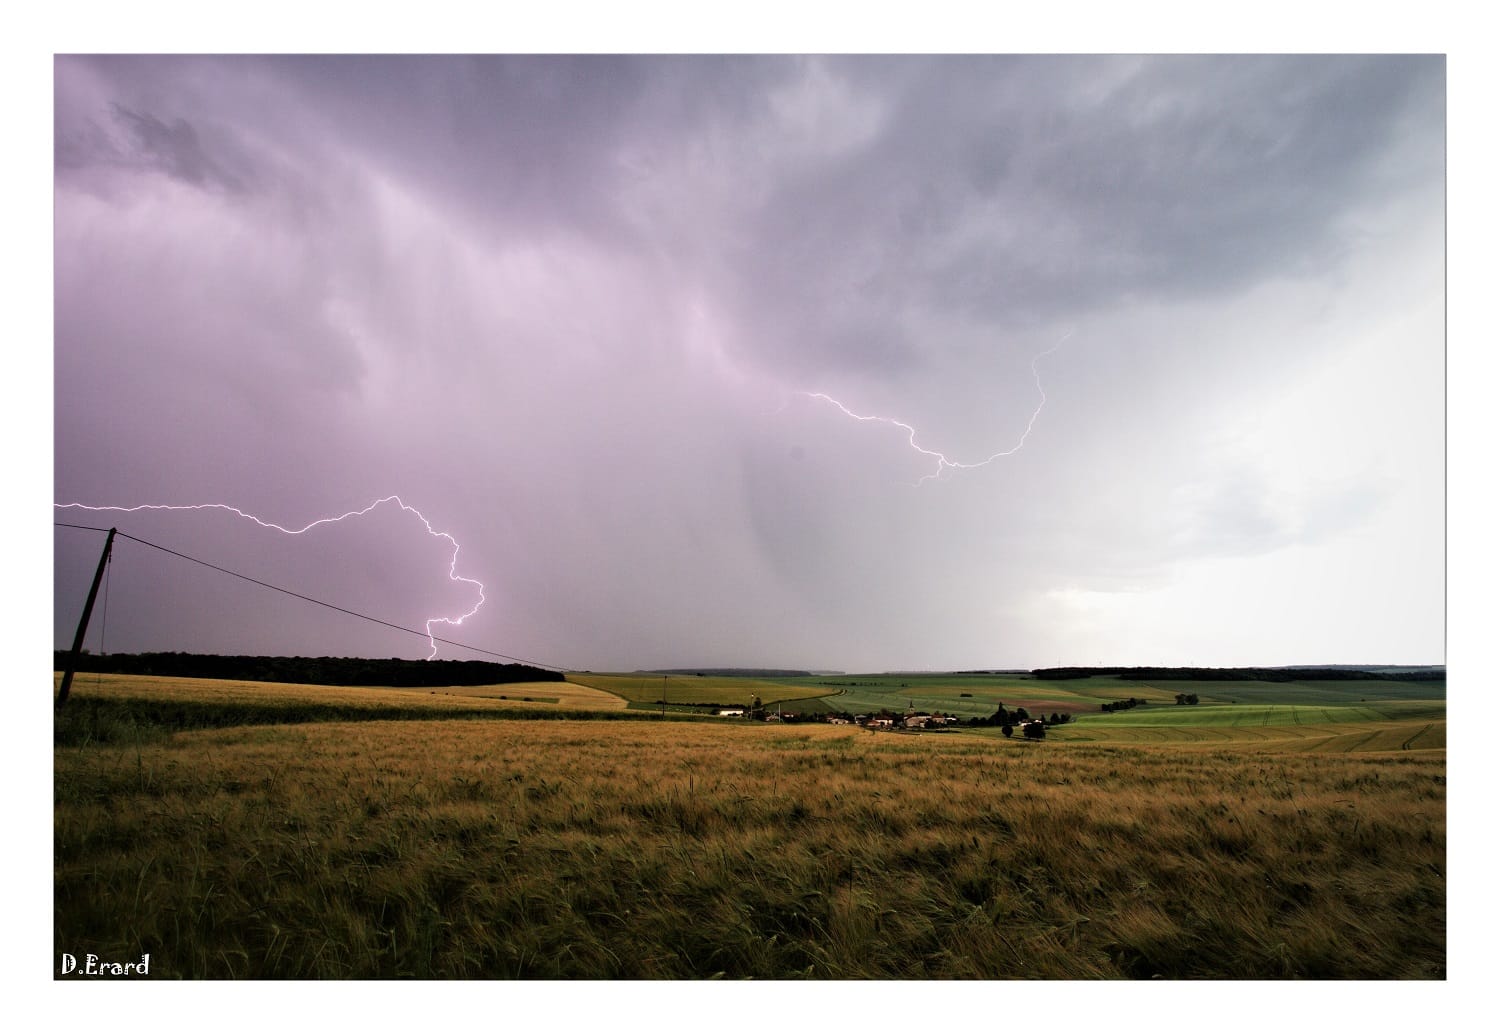 Photo prise le 5 juin en bordure d'une zone orageuse qui remontait à l'est de la Meuse. - 05/06/2019 19:00 - Didier Erard